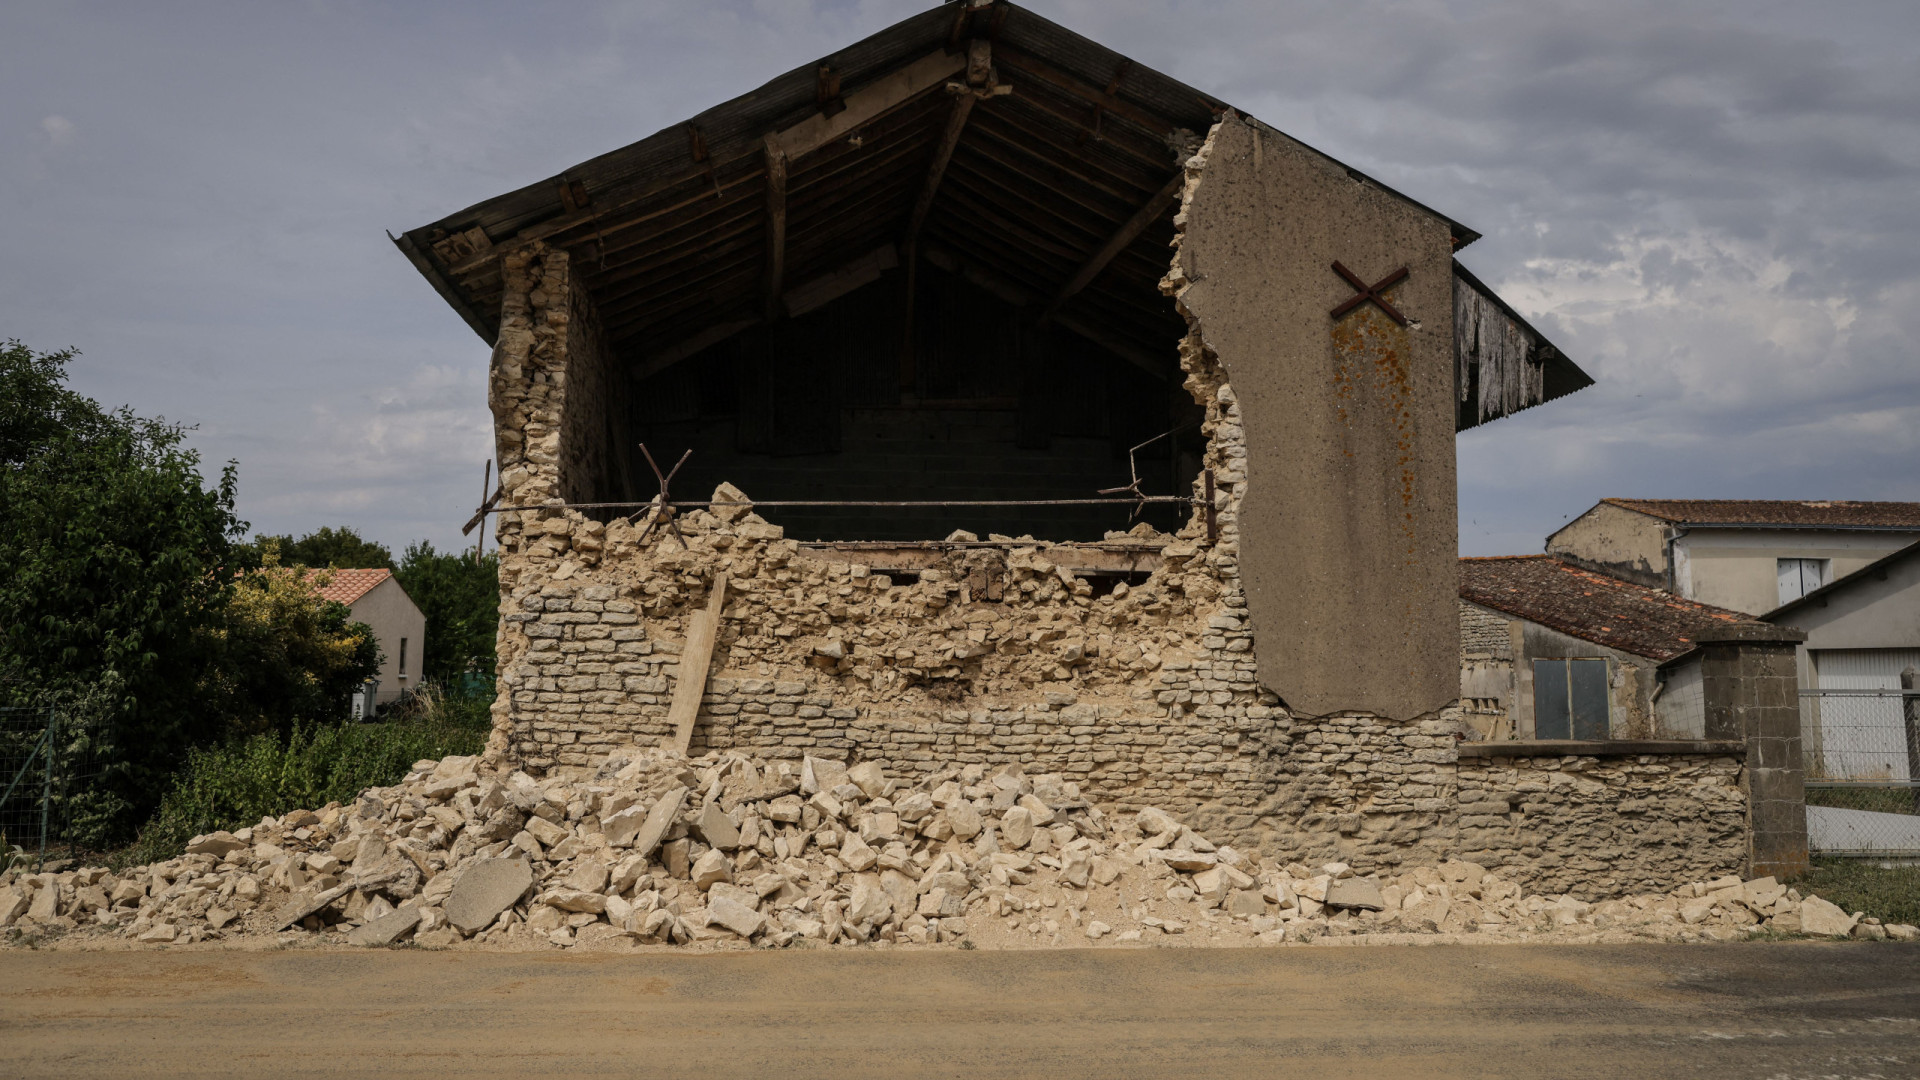 Raro terremoto na França força realojamento de 170 pessoas